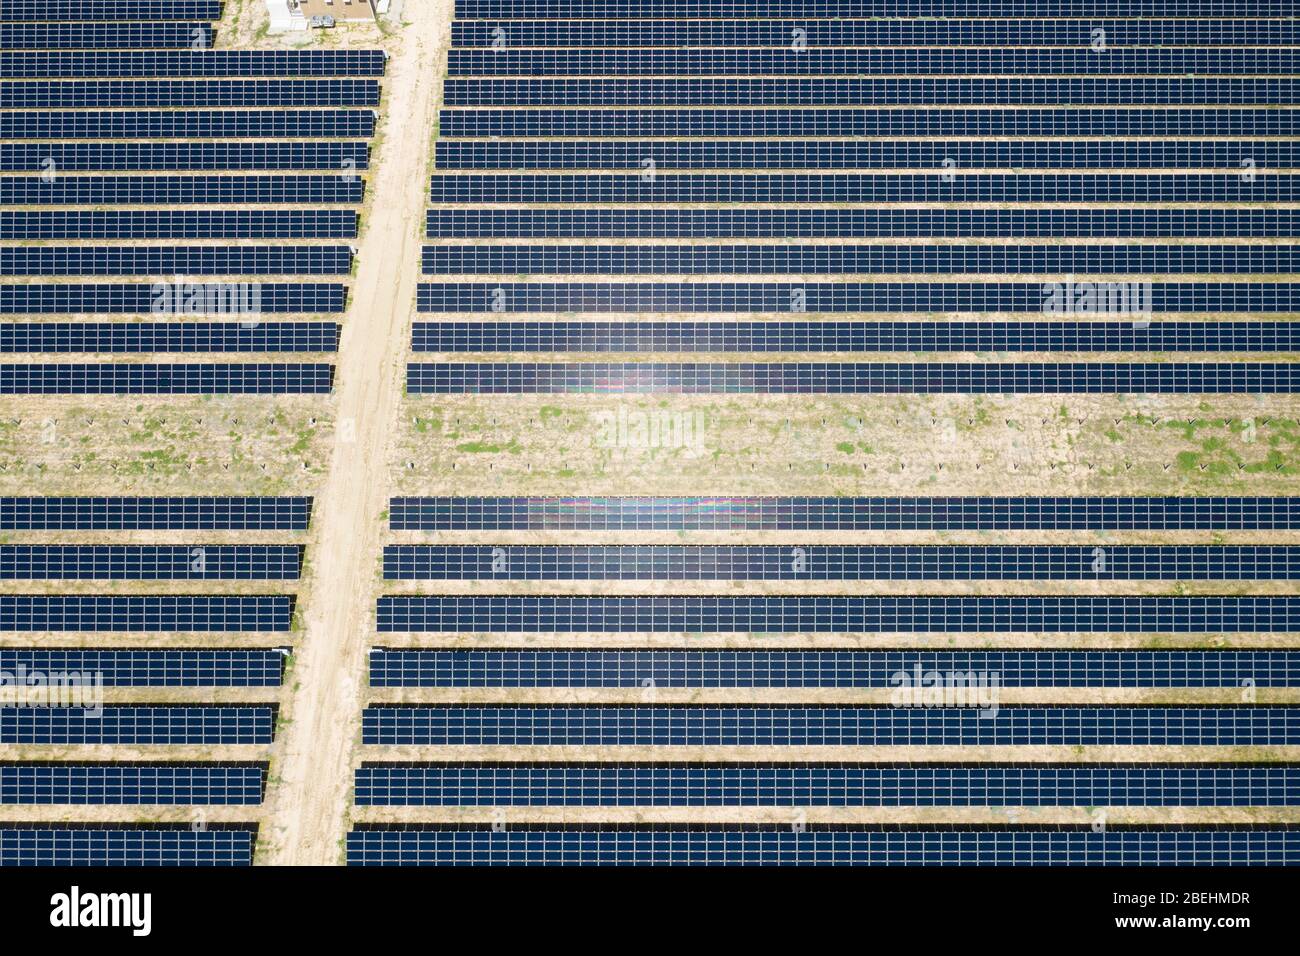 Luftaufnahme der Photovoltaik (PV) grünen Solar Ranch im Antelope Valley in der Mojave Wüste von Kalifornien Stockfoto